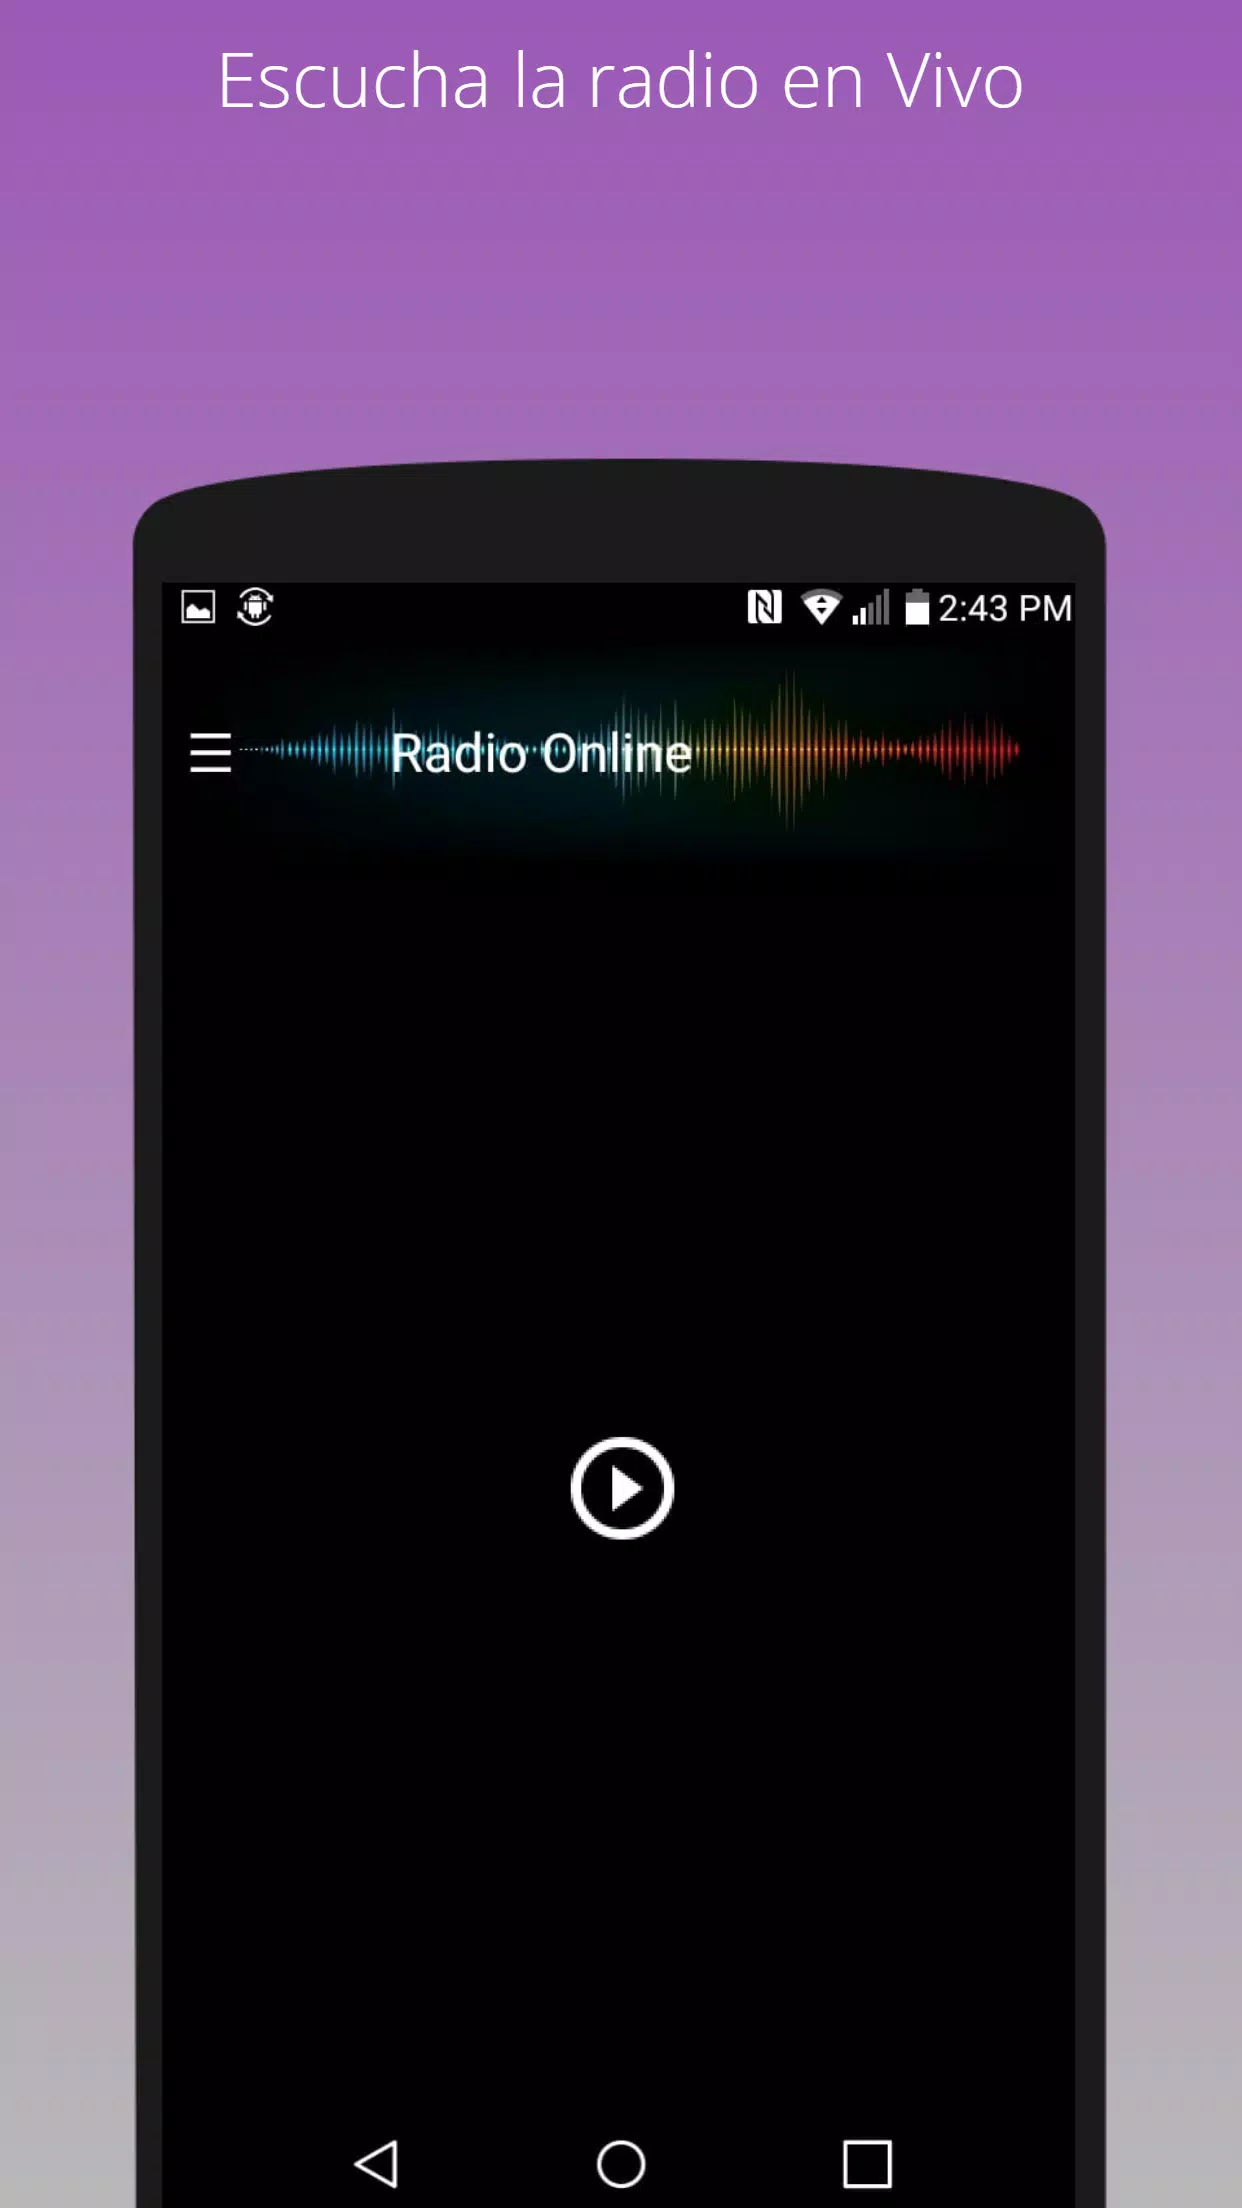 Radio Romántica 104.1 FM en vivo emisora chilena APK per Android Download